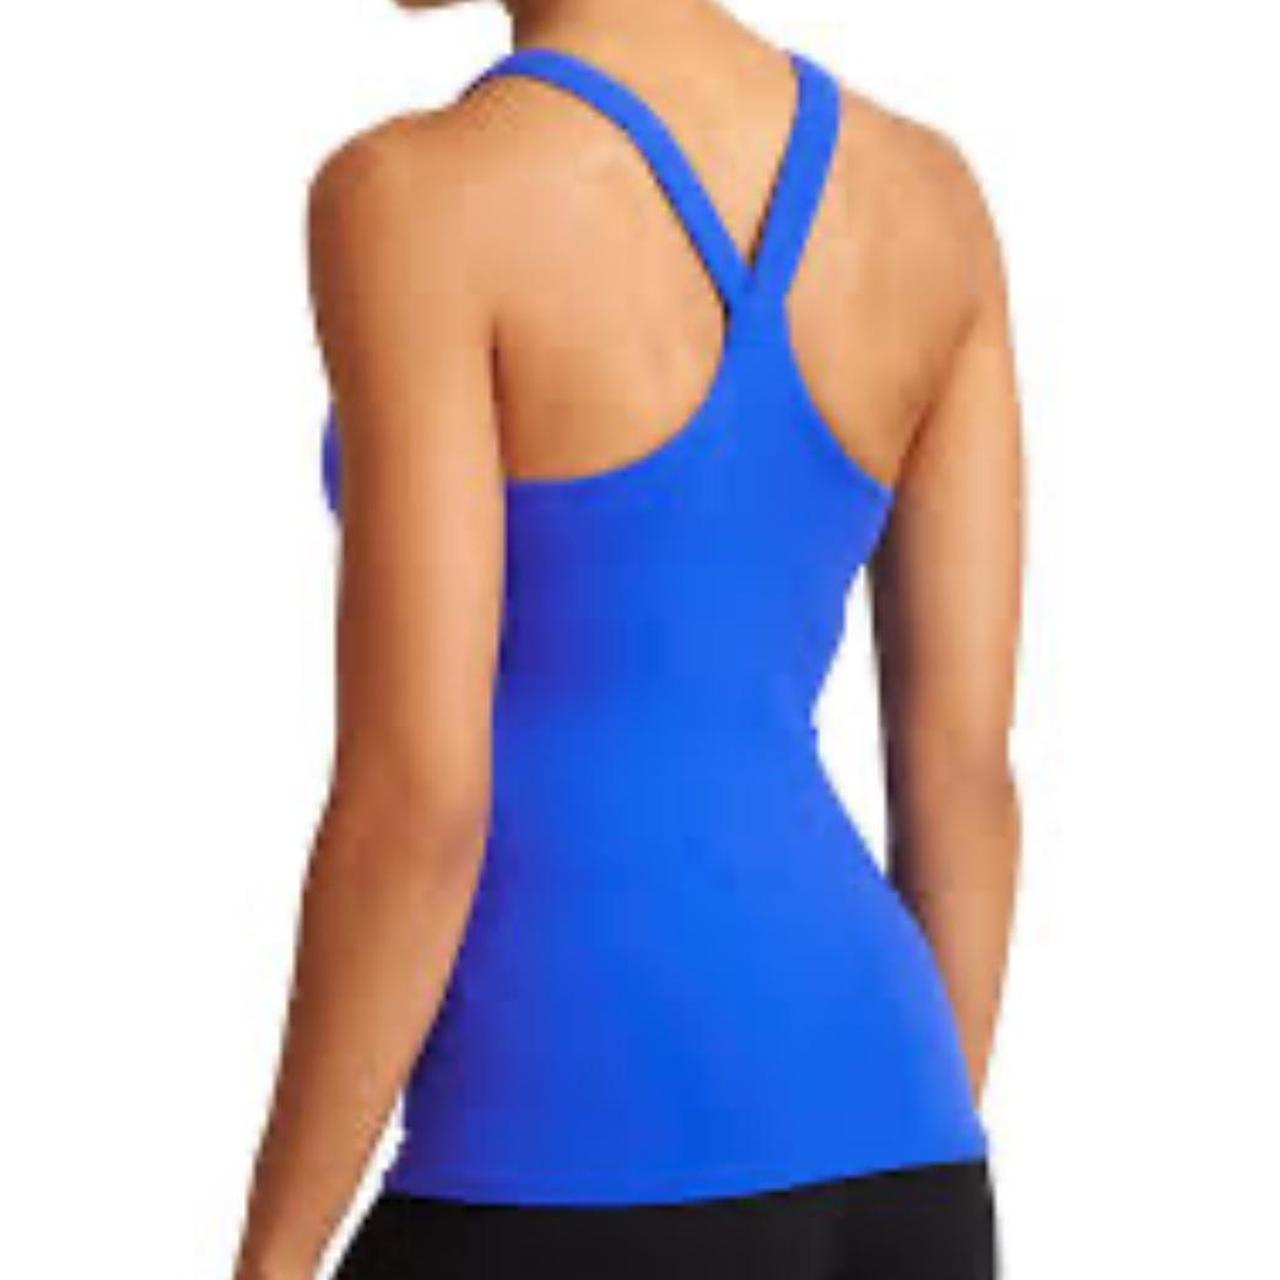 royal blue athleta workout tank top * size xl * - Depop